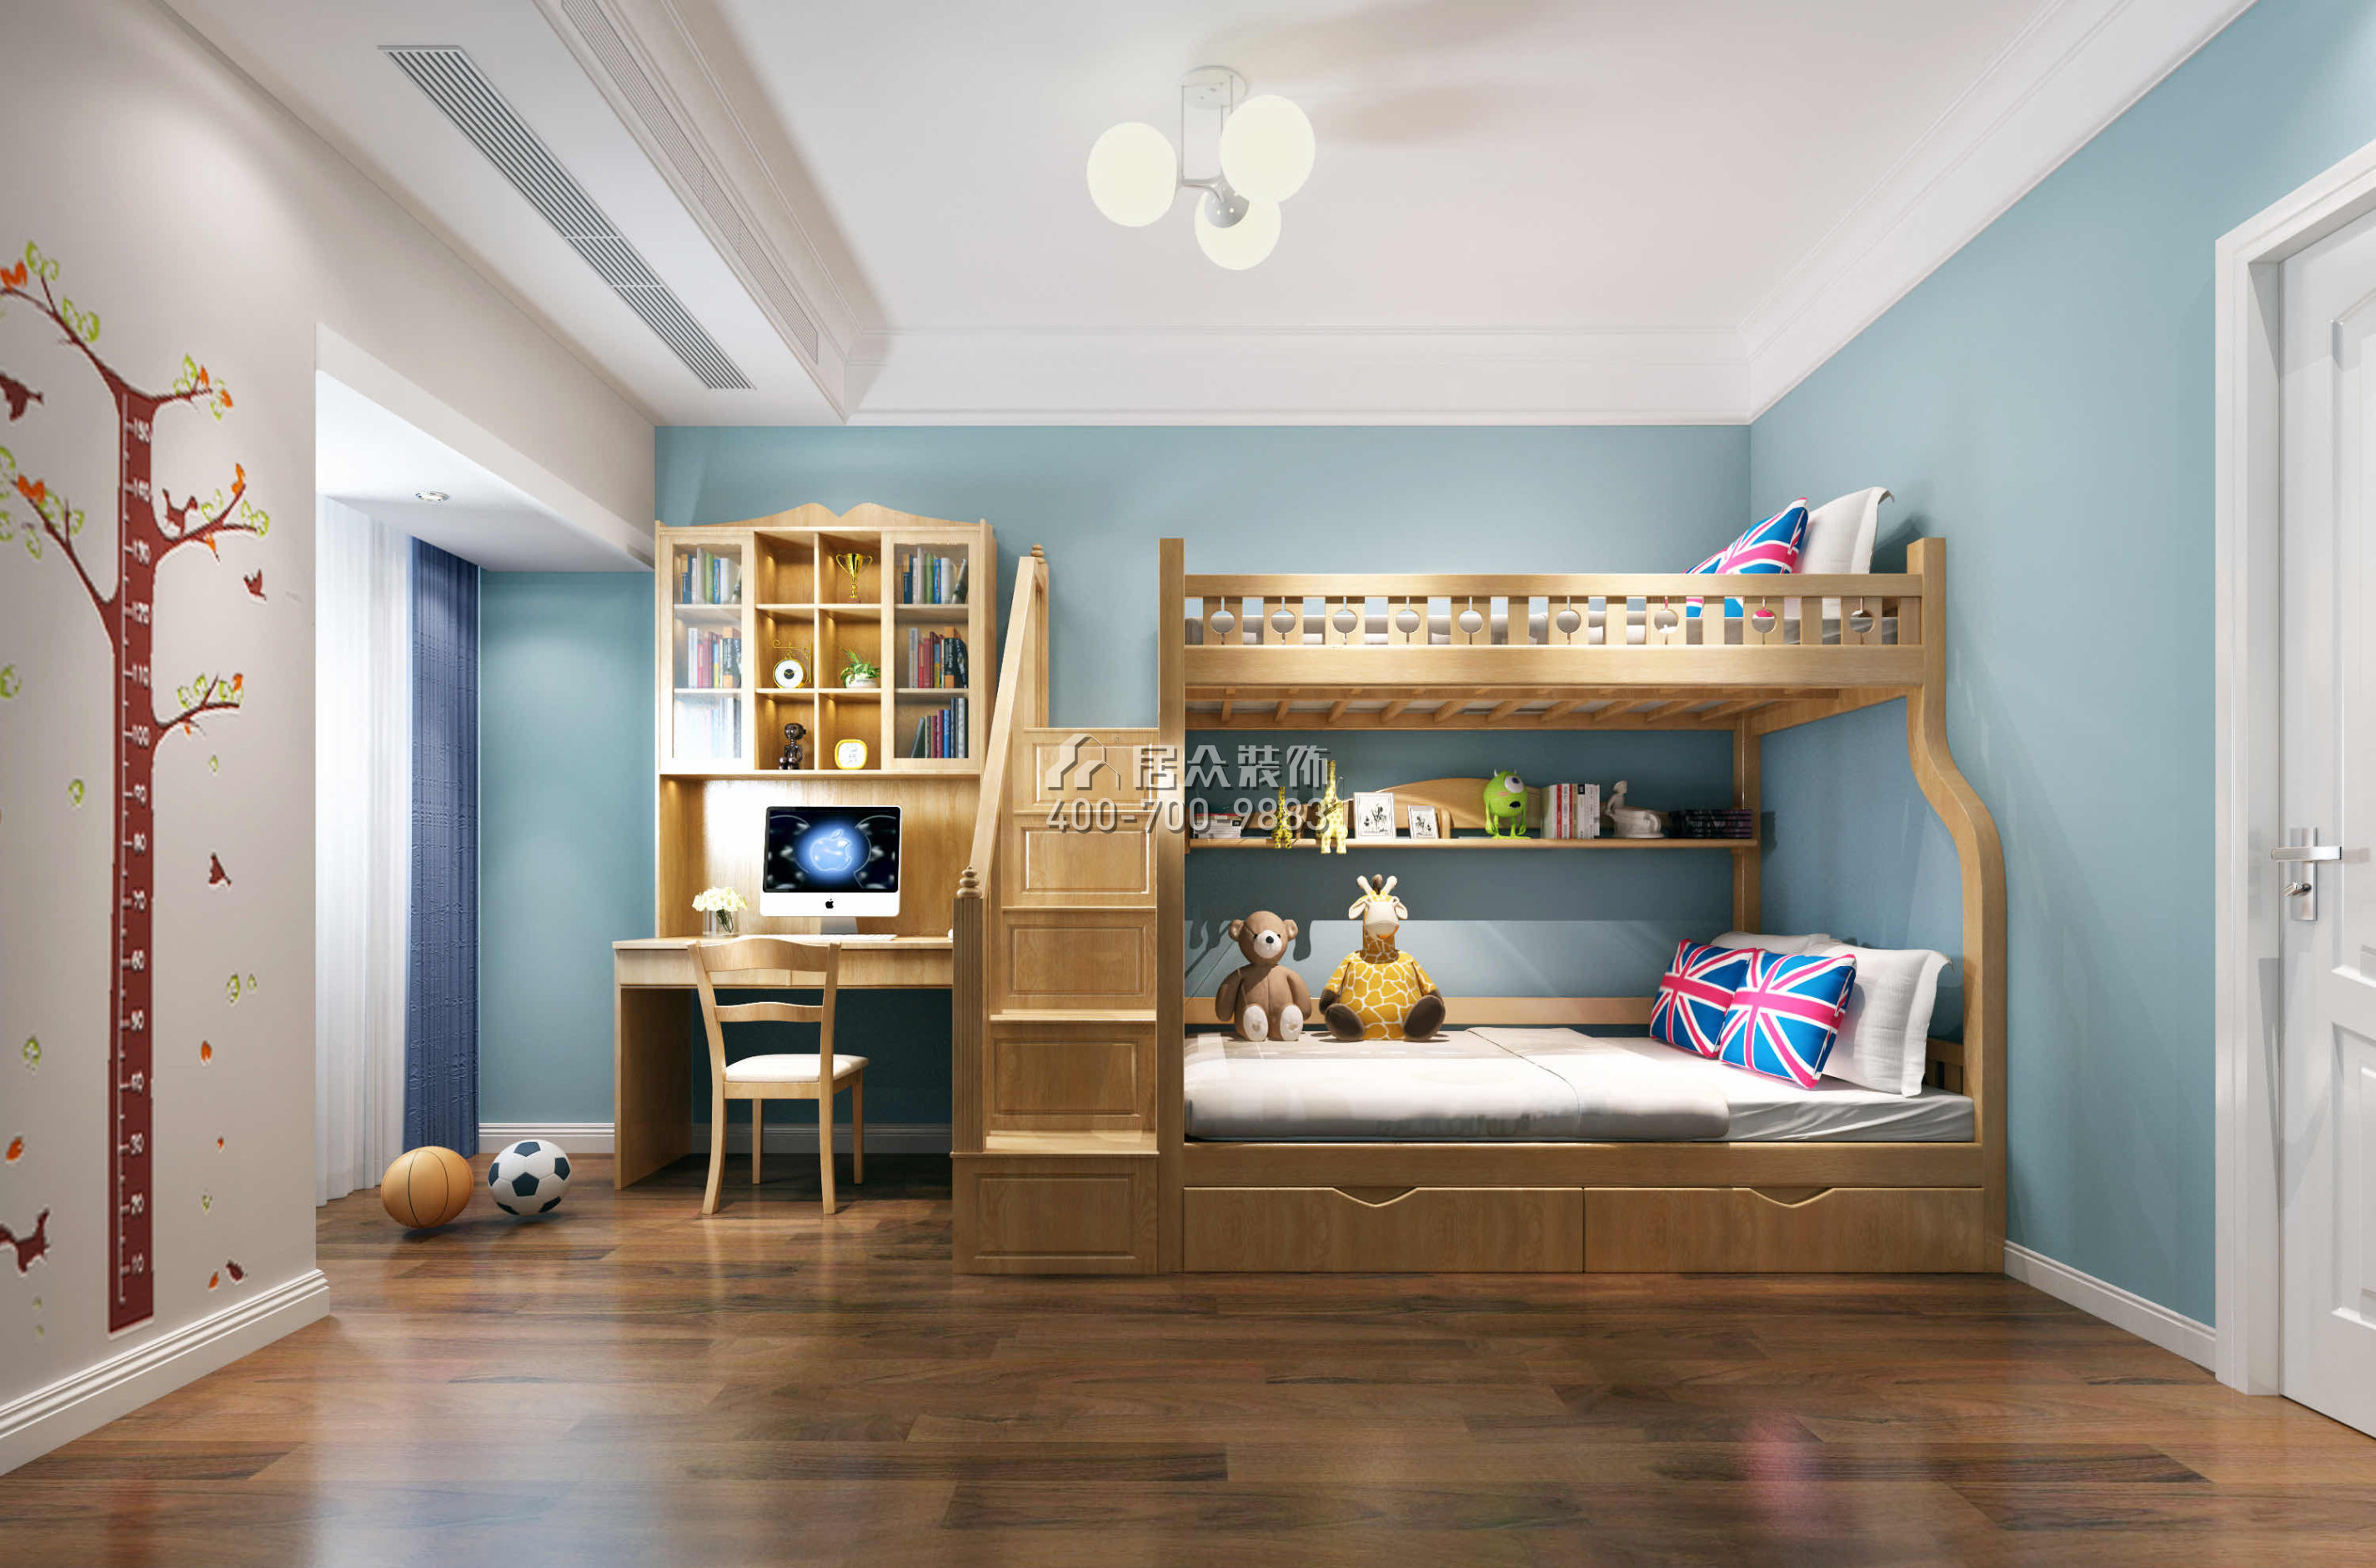 勤诚达132平方米欧式风格平层户型儿童房装修效果图